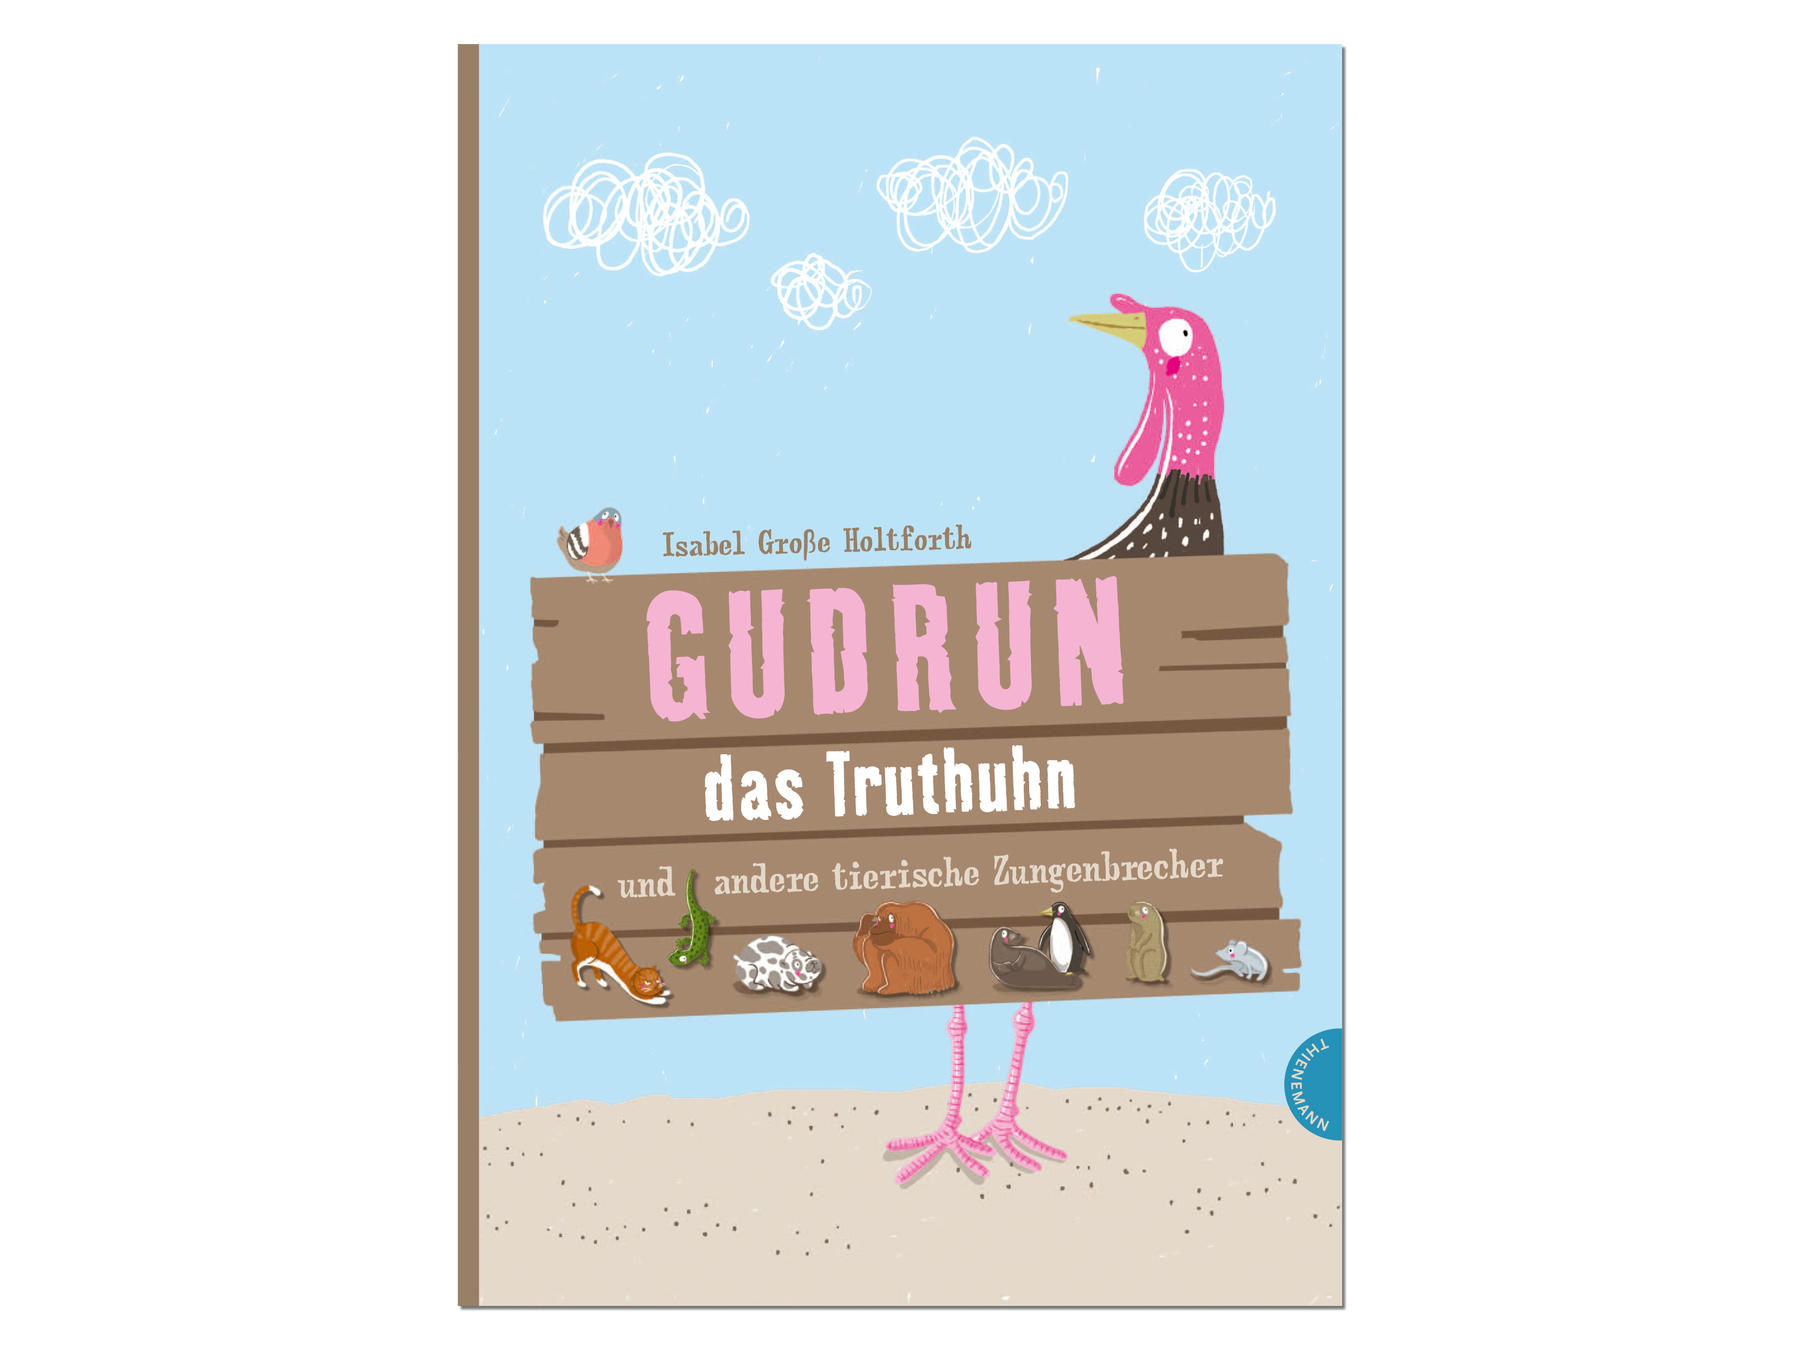 Gudrun das Truthuhn, Bilderbuch, Illustration Isabel Große Holtforth